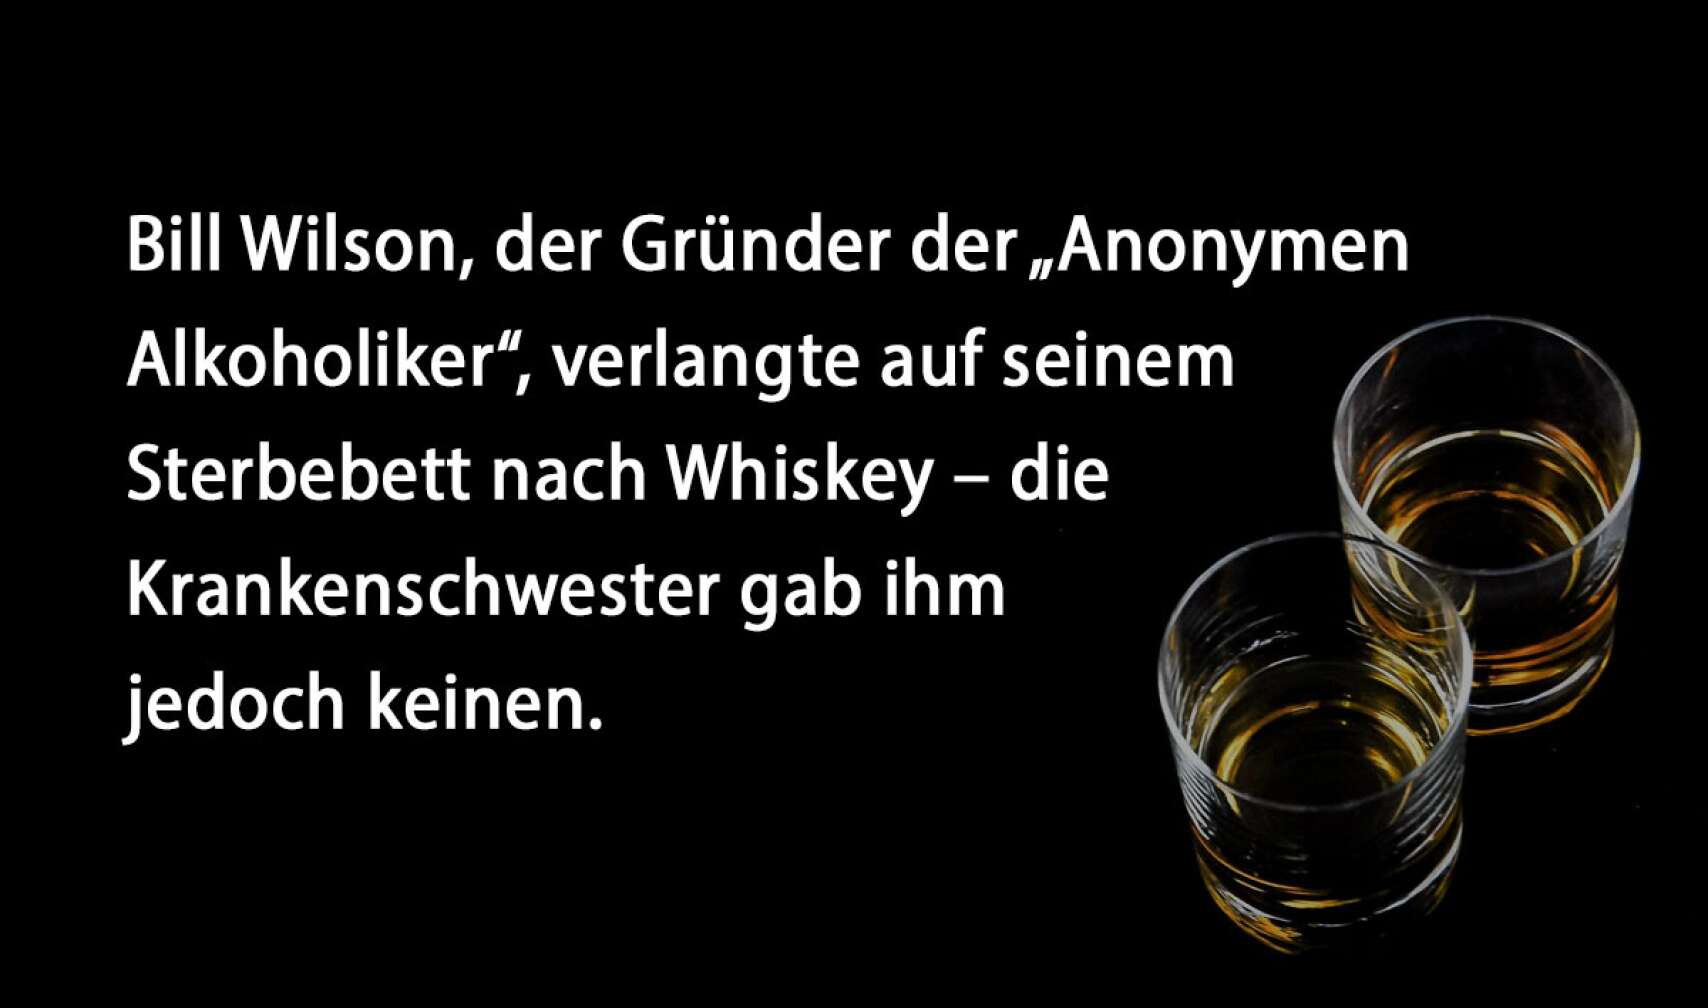 Bill Wilson, der Gründer der „Anonymen Alkoholiker“, verlangte auf seinem Sterbebett nach Whiskey – die Krankenschwester gab ihm jedoch keinen.